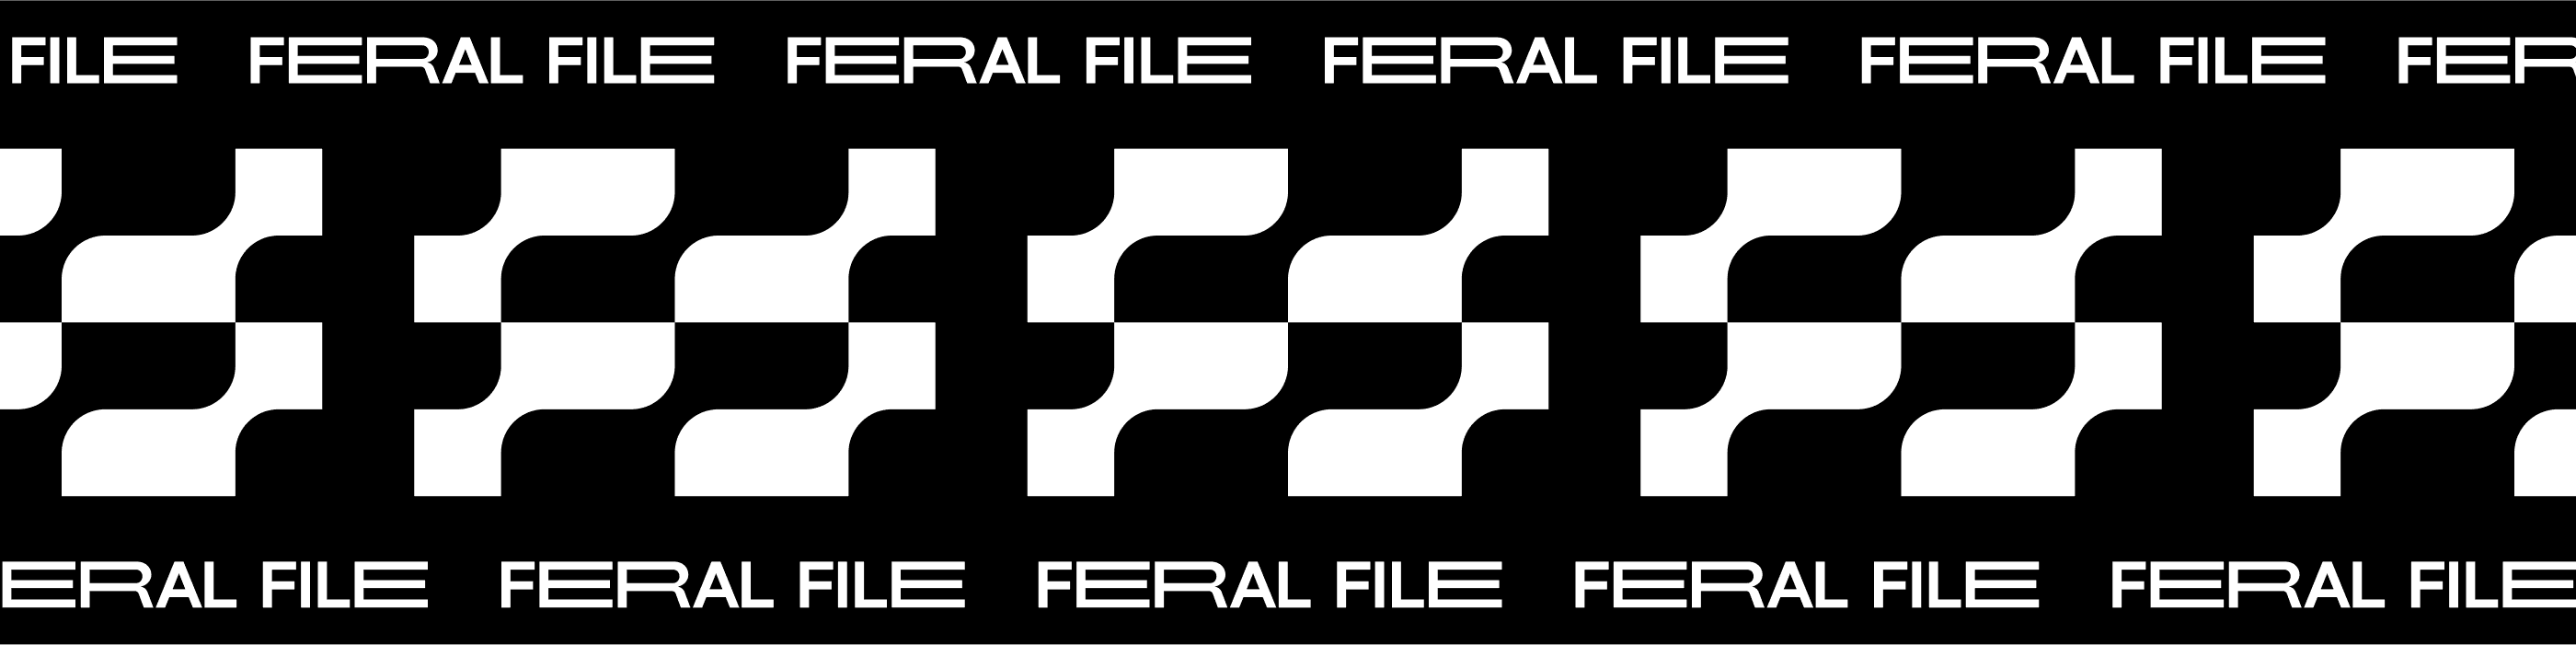 FeralFile 橫幅